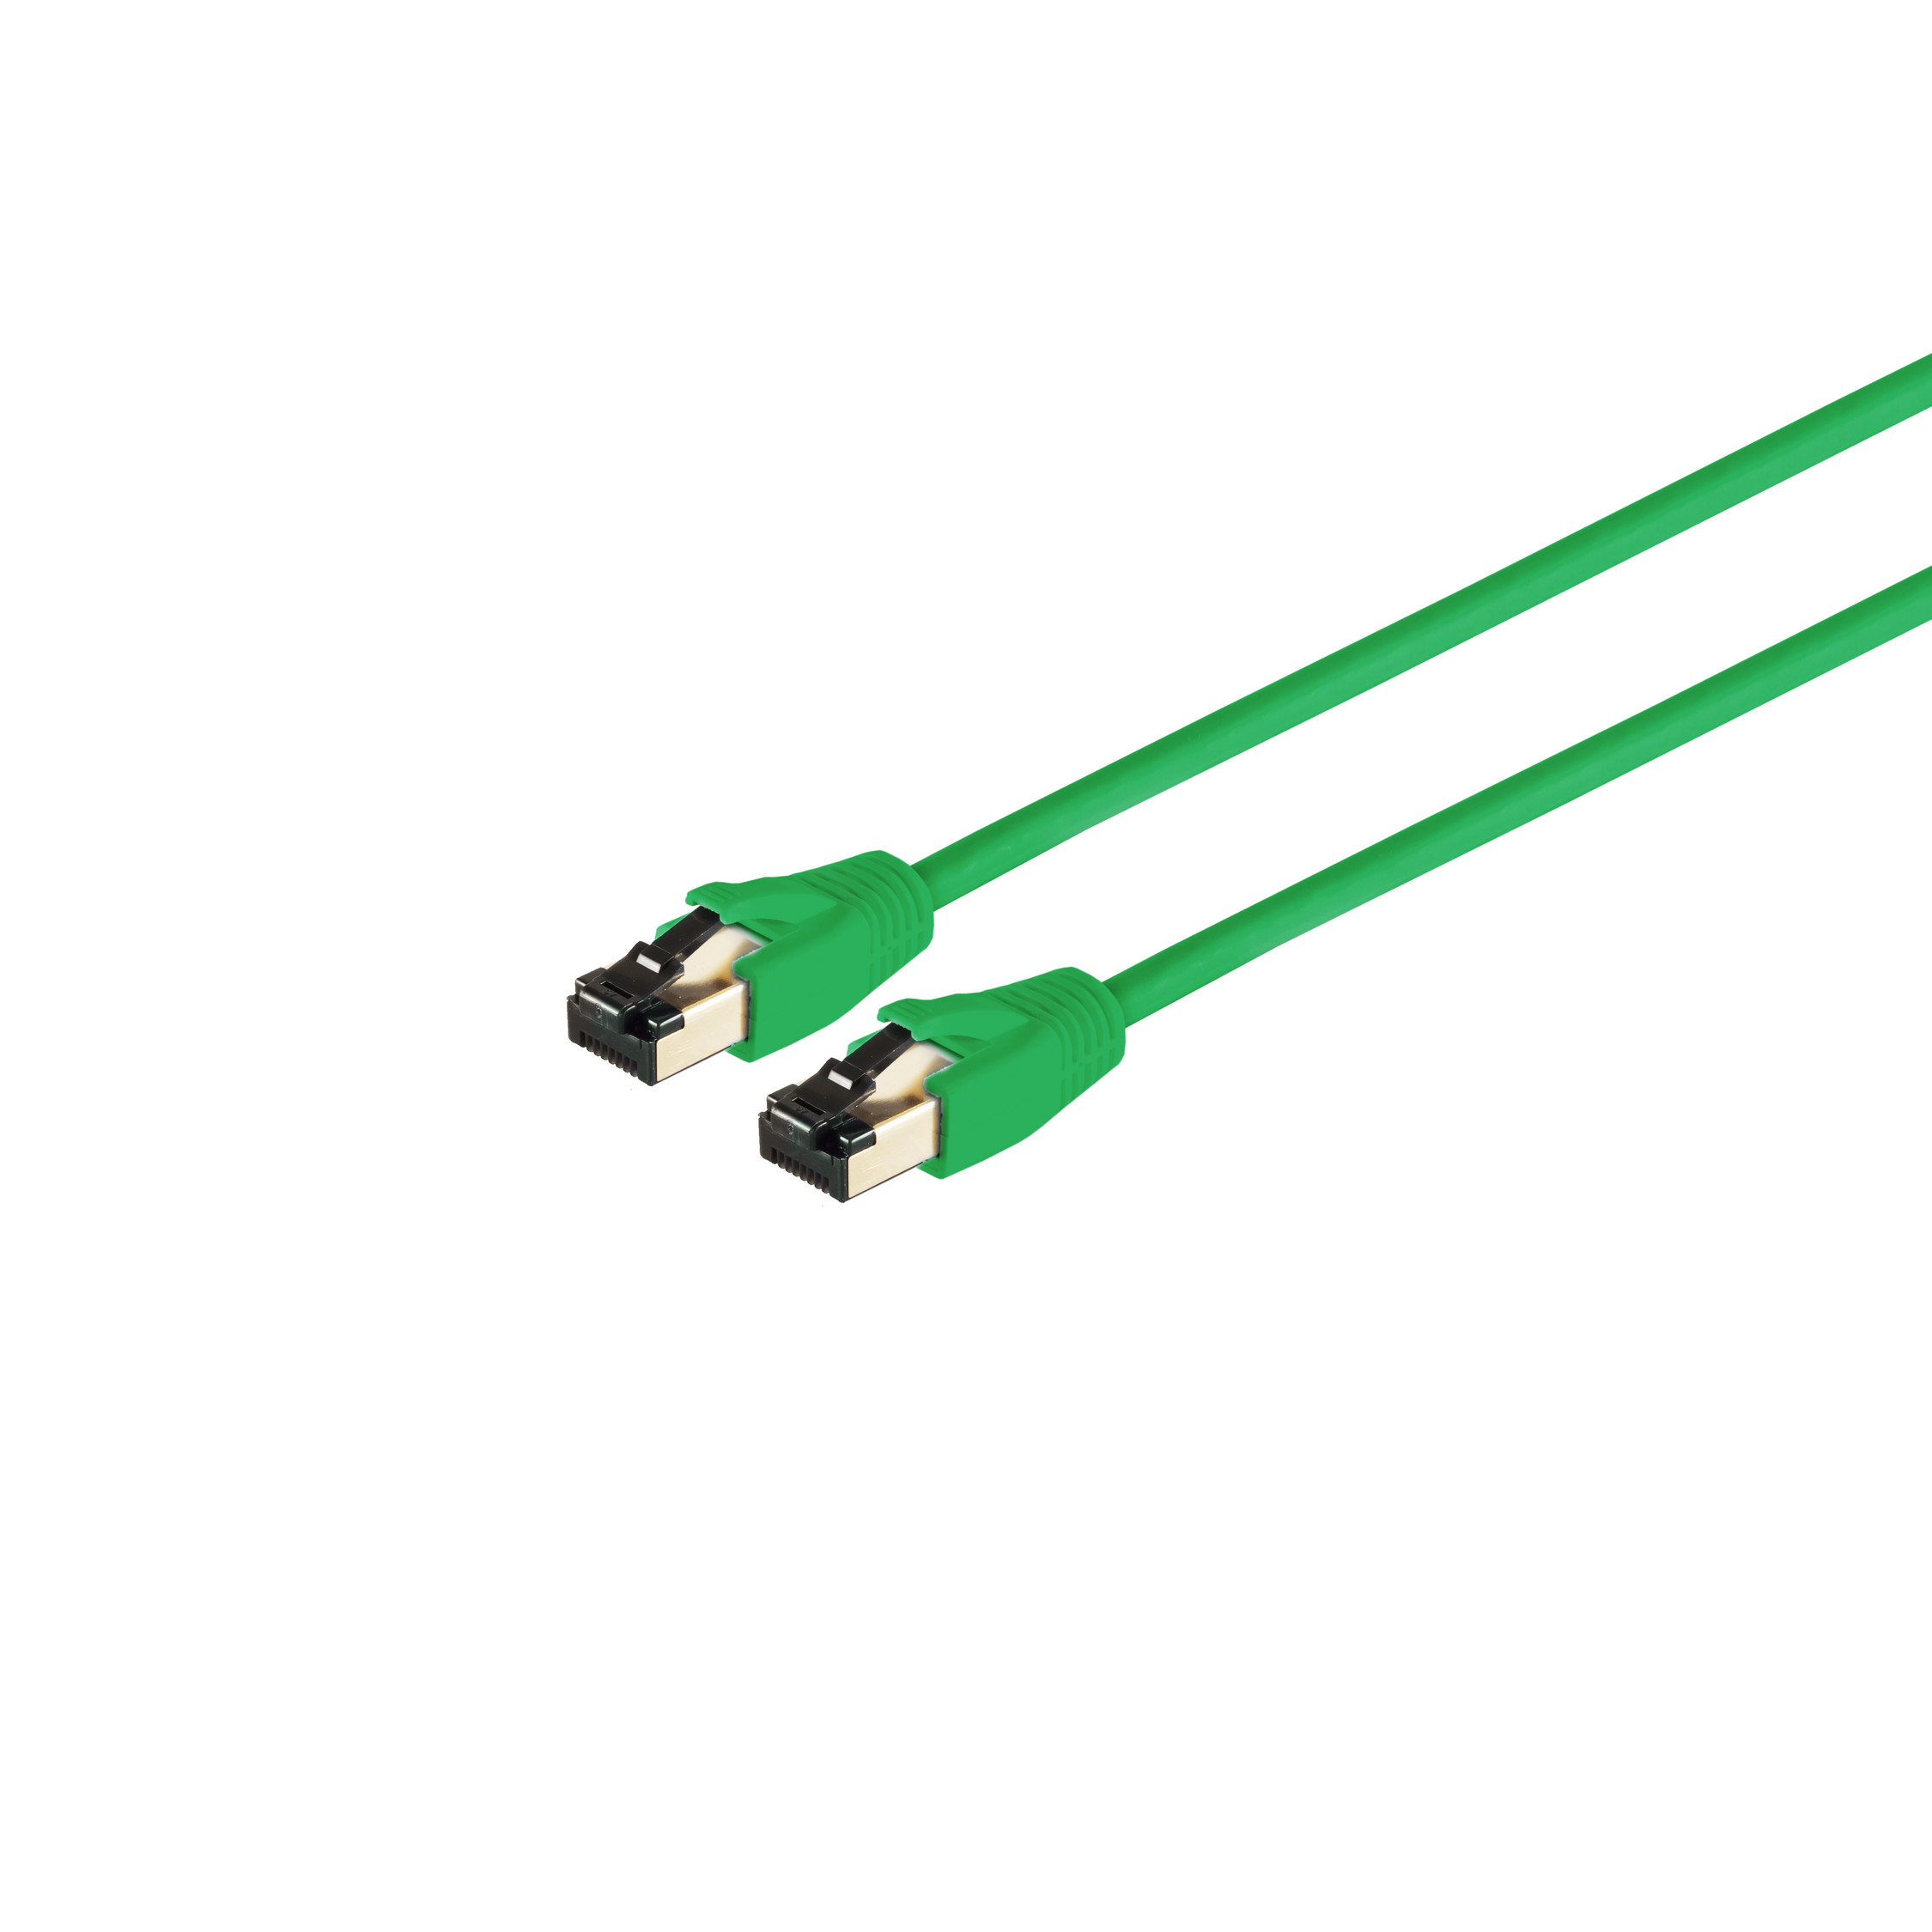 Patchkabel grün 15,0m, LSZH RJ45, PIMF cat 8.1 F/FTP S/CONN Patchkabel CONNECTIVITY MAXIMUM 15 m